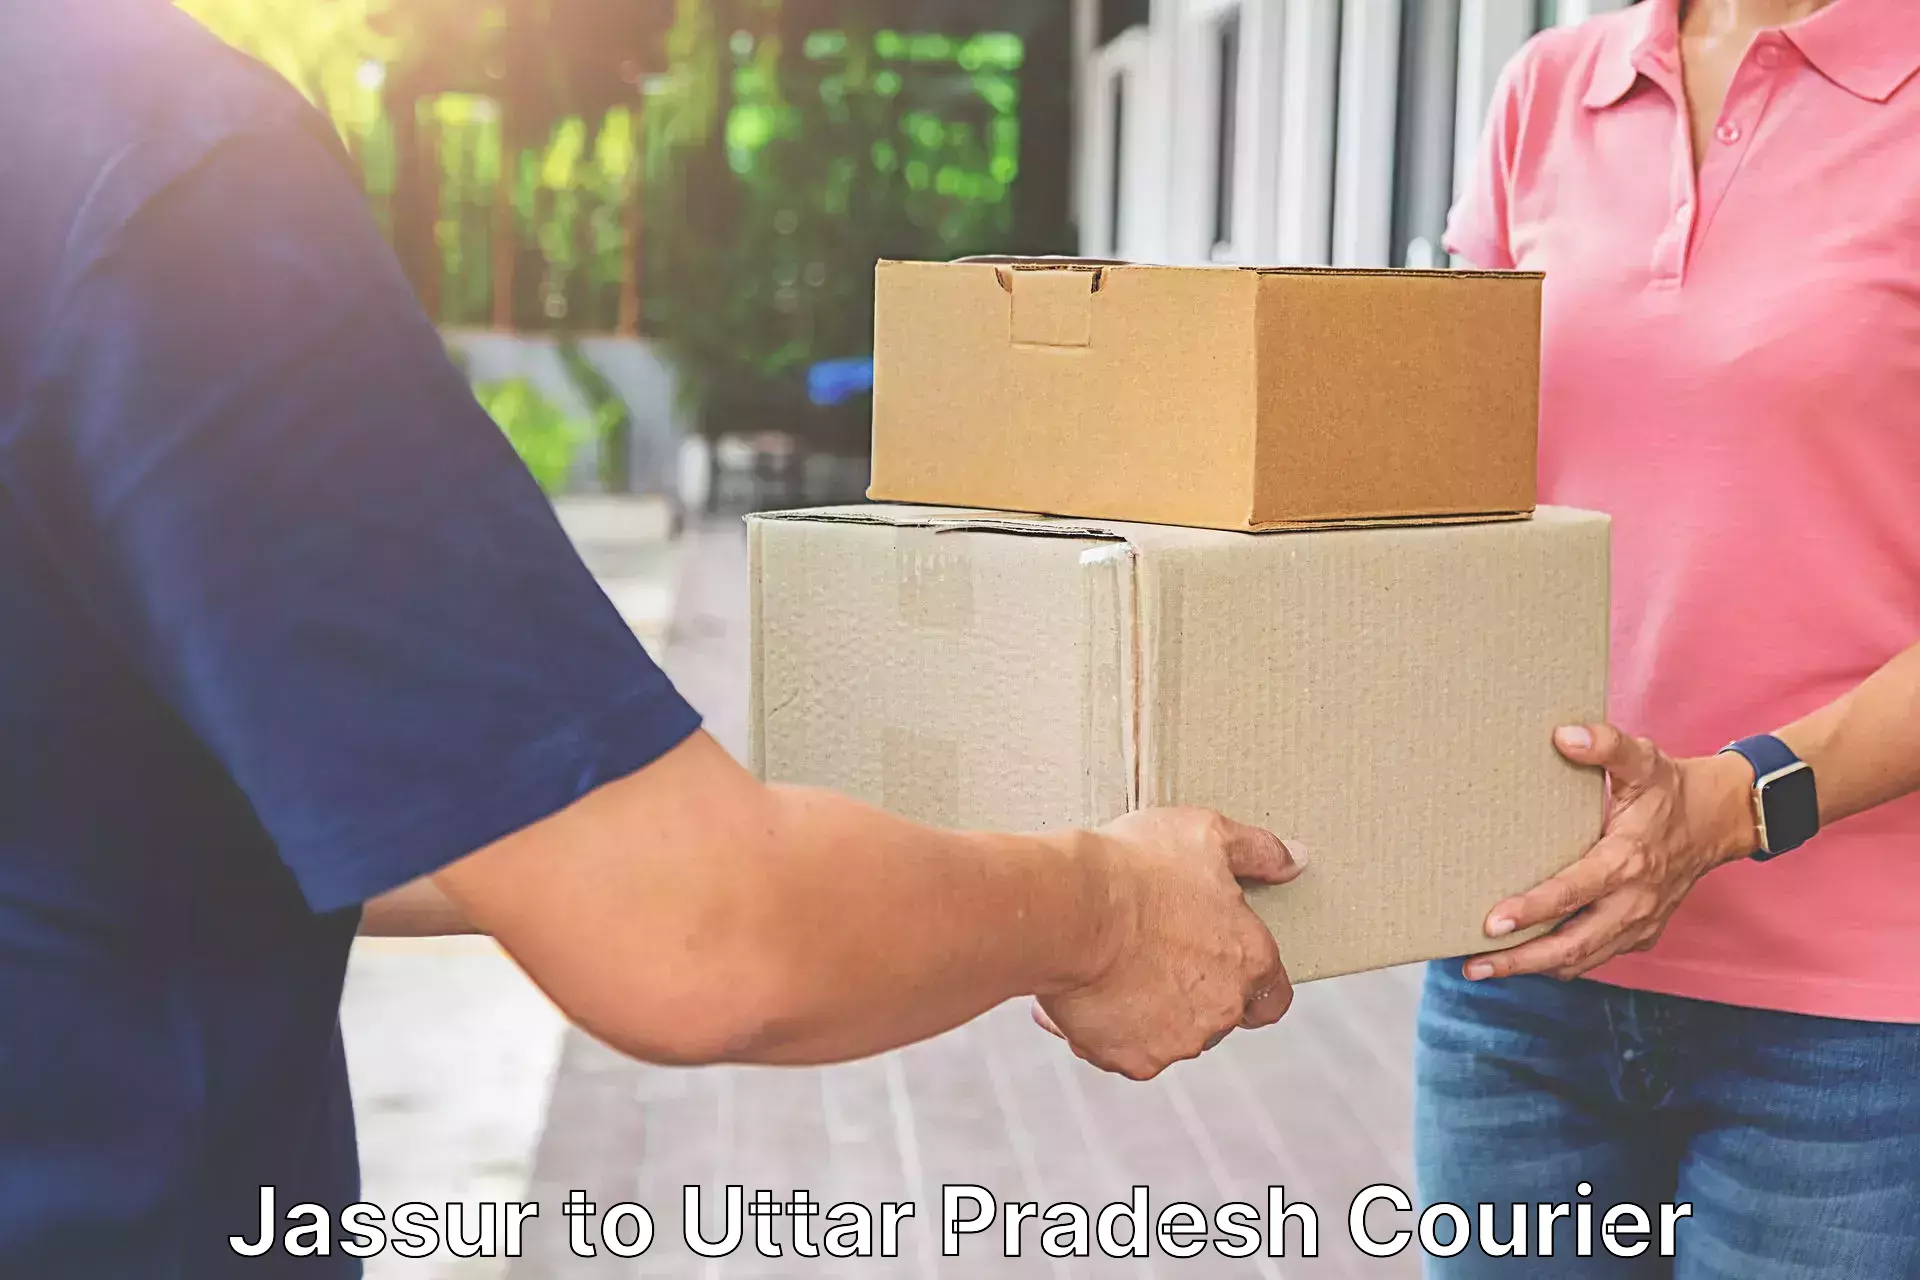 Professional courier handling Jassur to Barhalganj